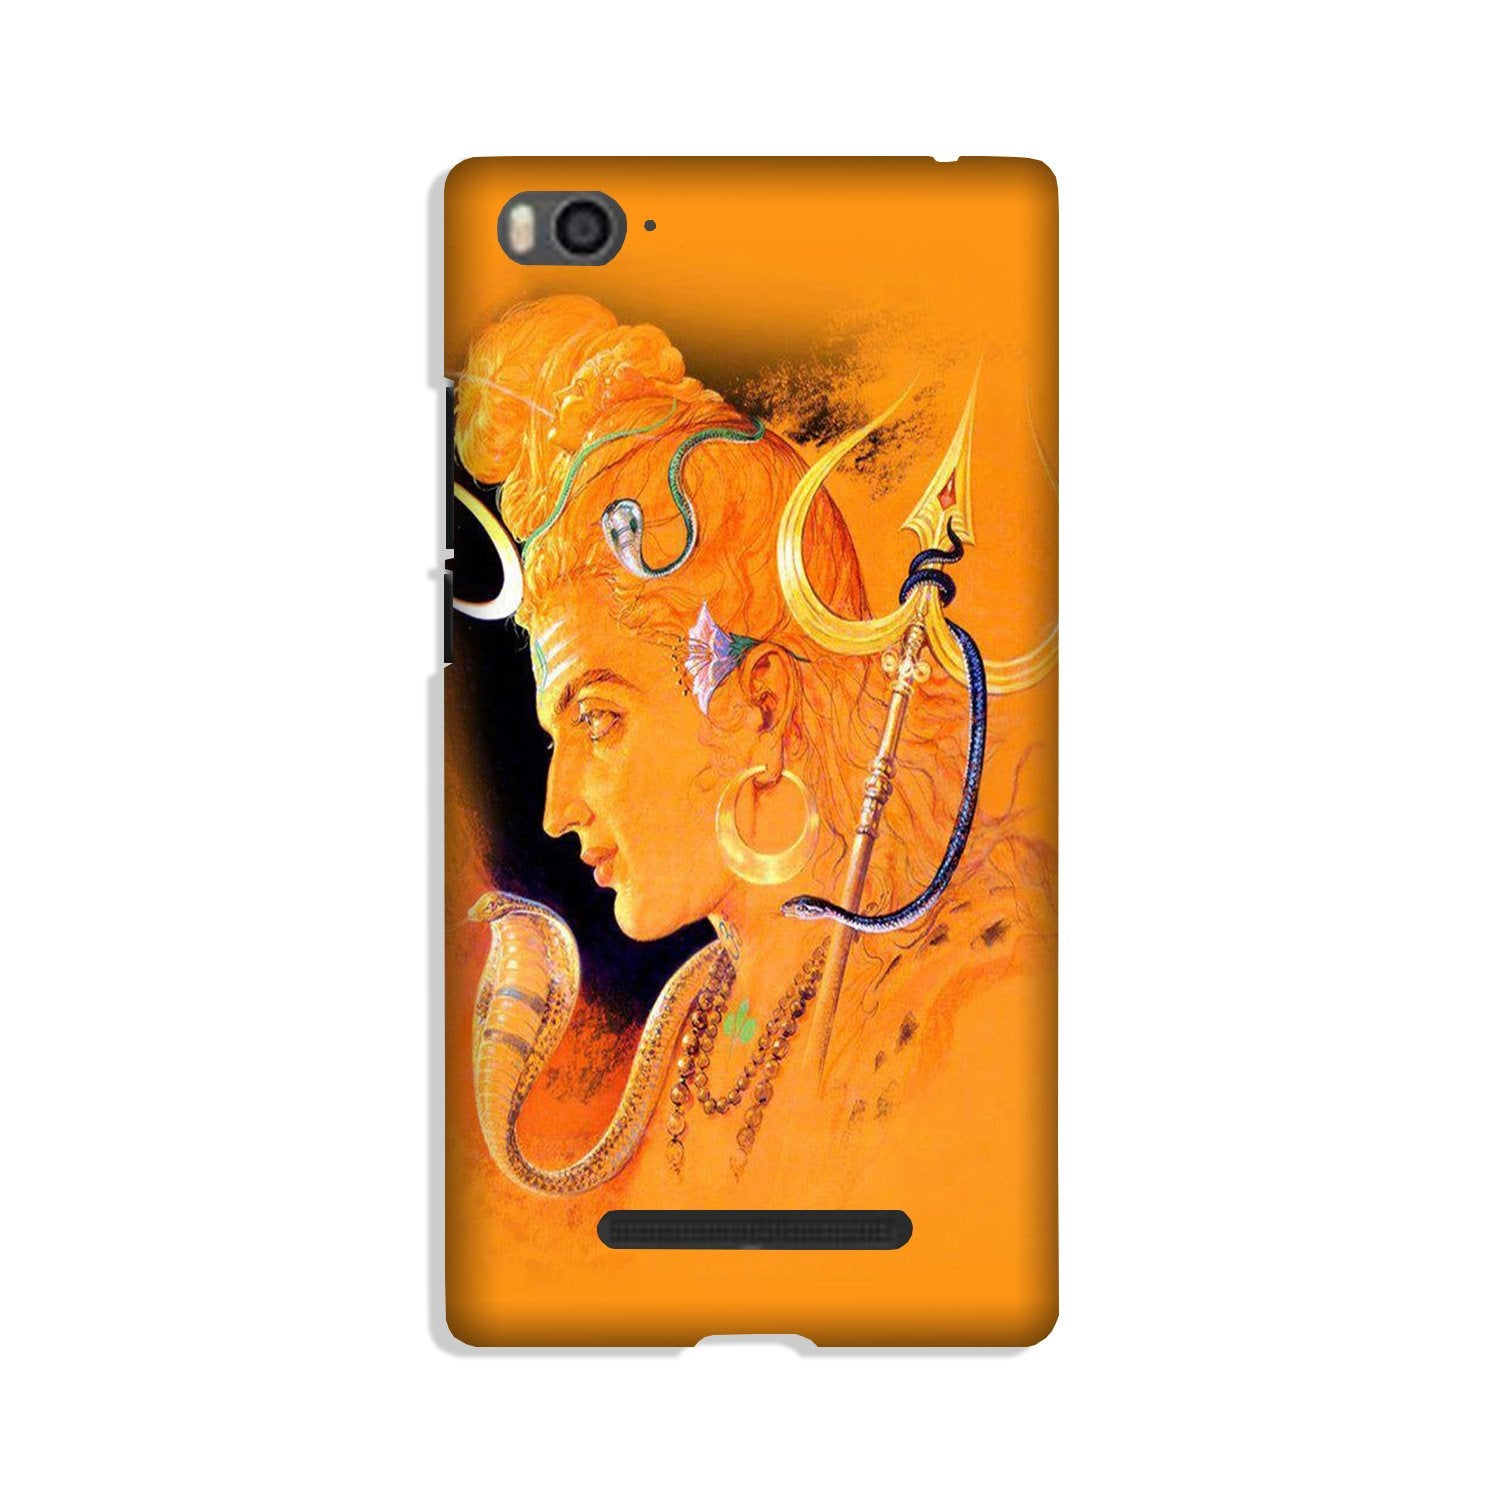 Lord Shiva Case for Xiaomi Mi 4i (Design No. 293)